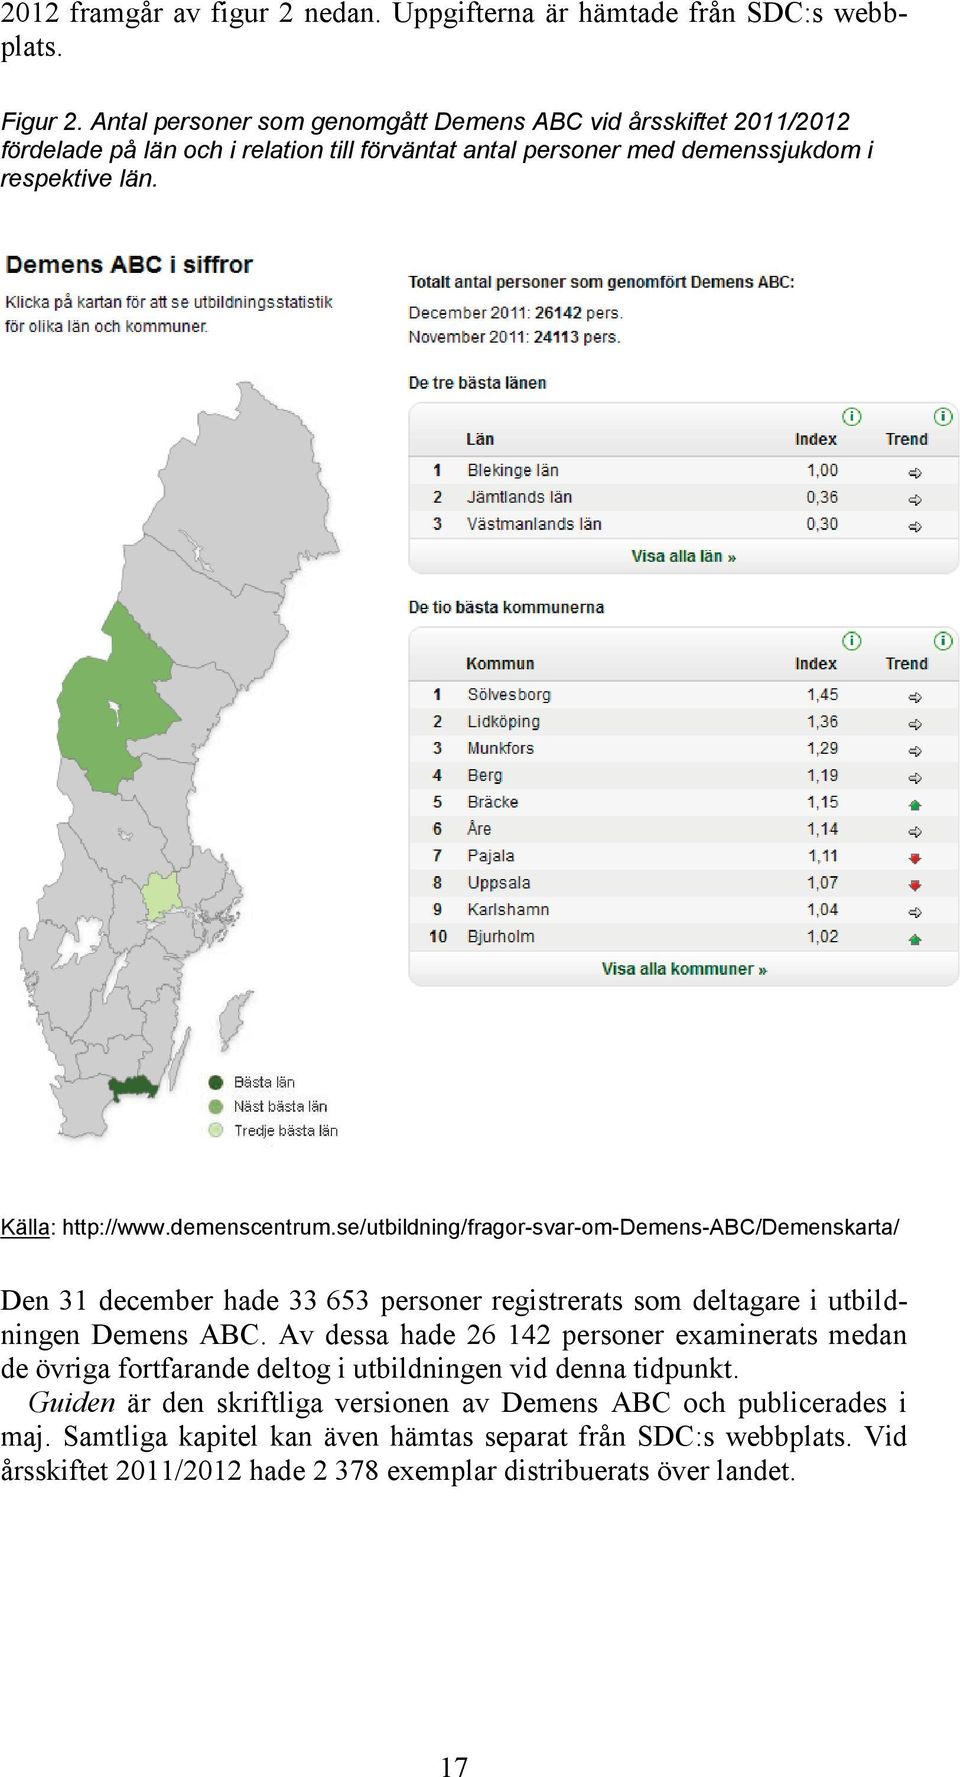 demenscentrum.se/utbildning/fragor-svar-om-demens-abc/demenskarta/ Den 31 december hade 33 653 personer registrerats som deltagare i utbildningen Demens ABC.